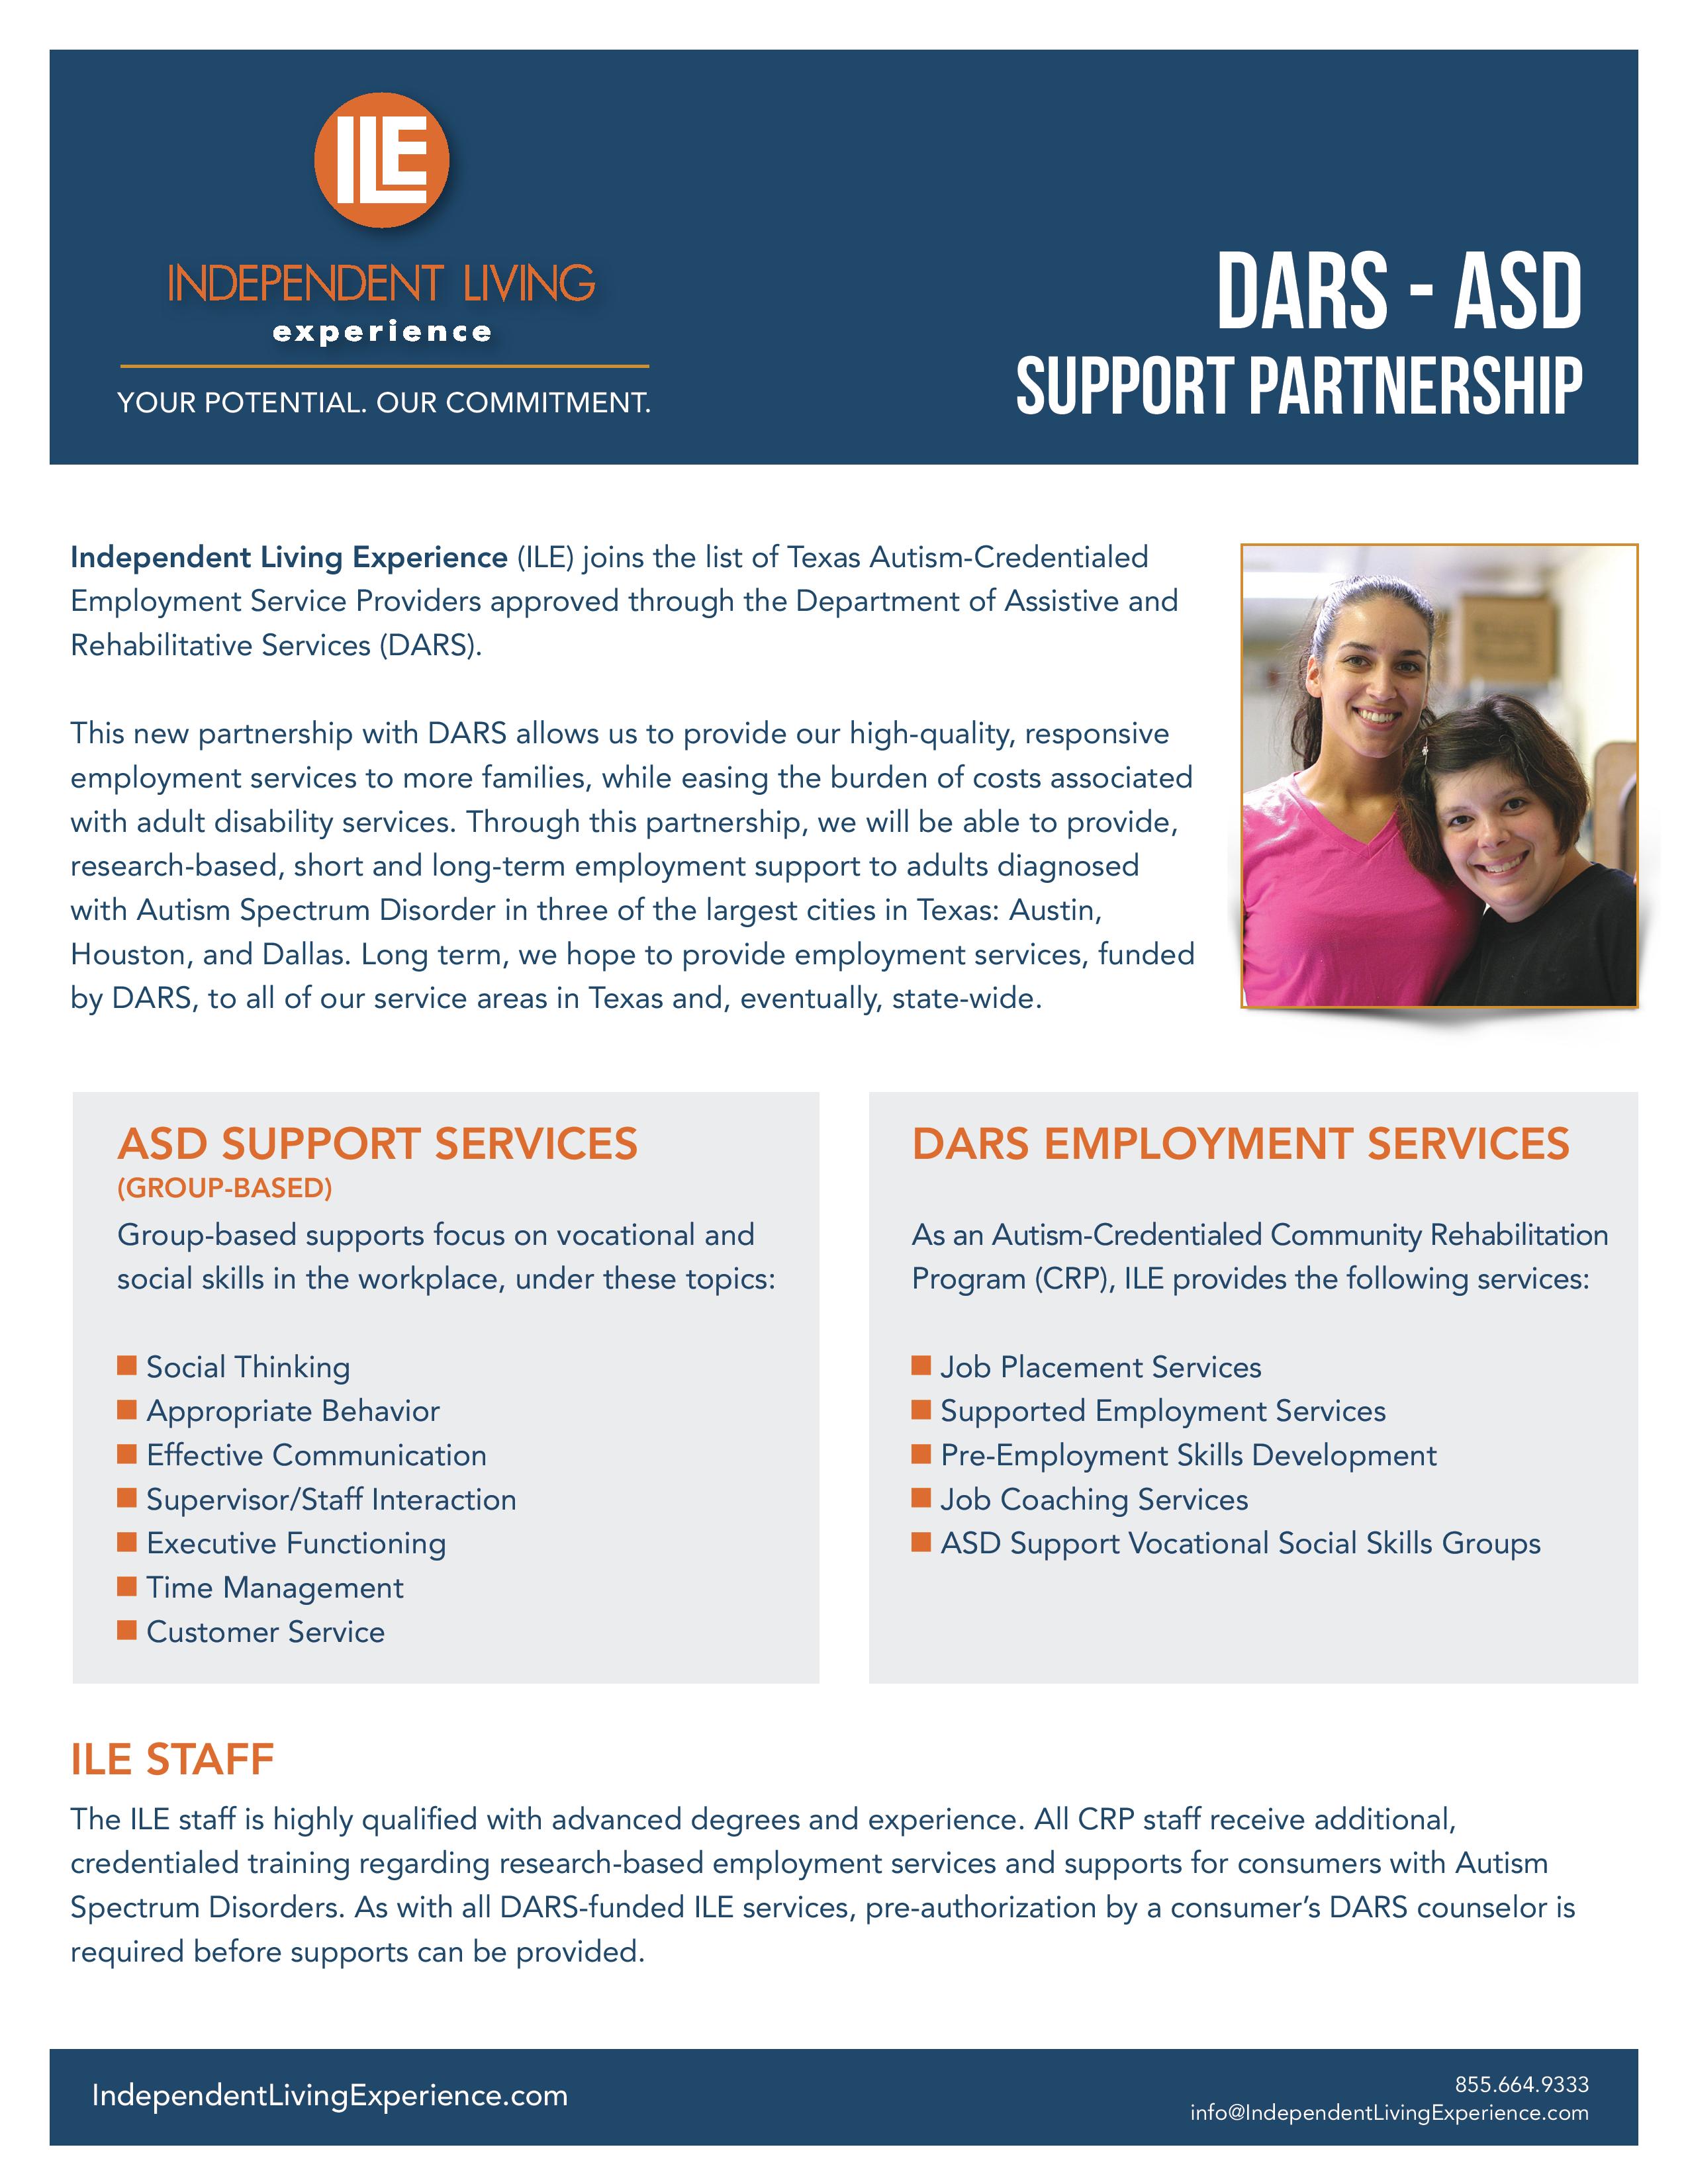 DARS-ASD Support Partnership